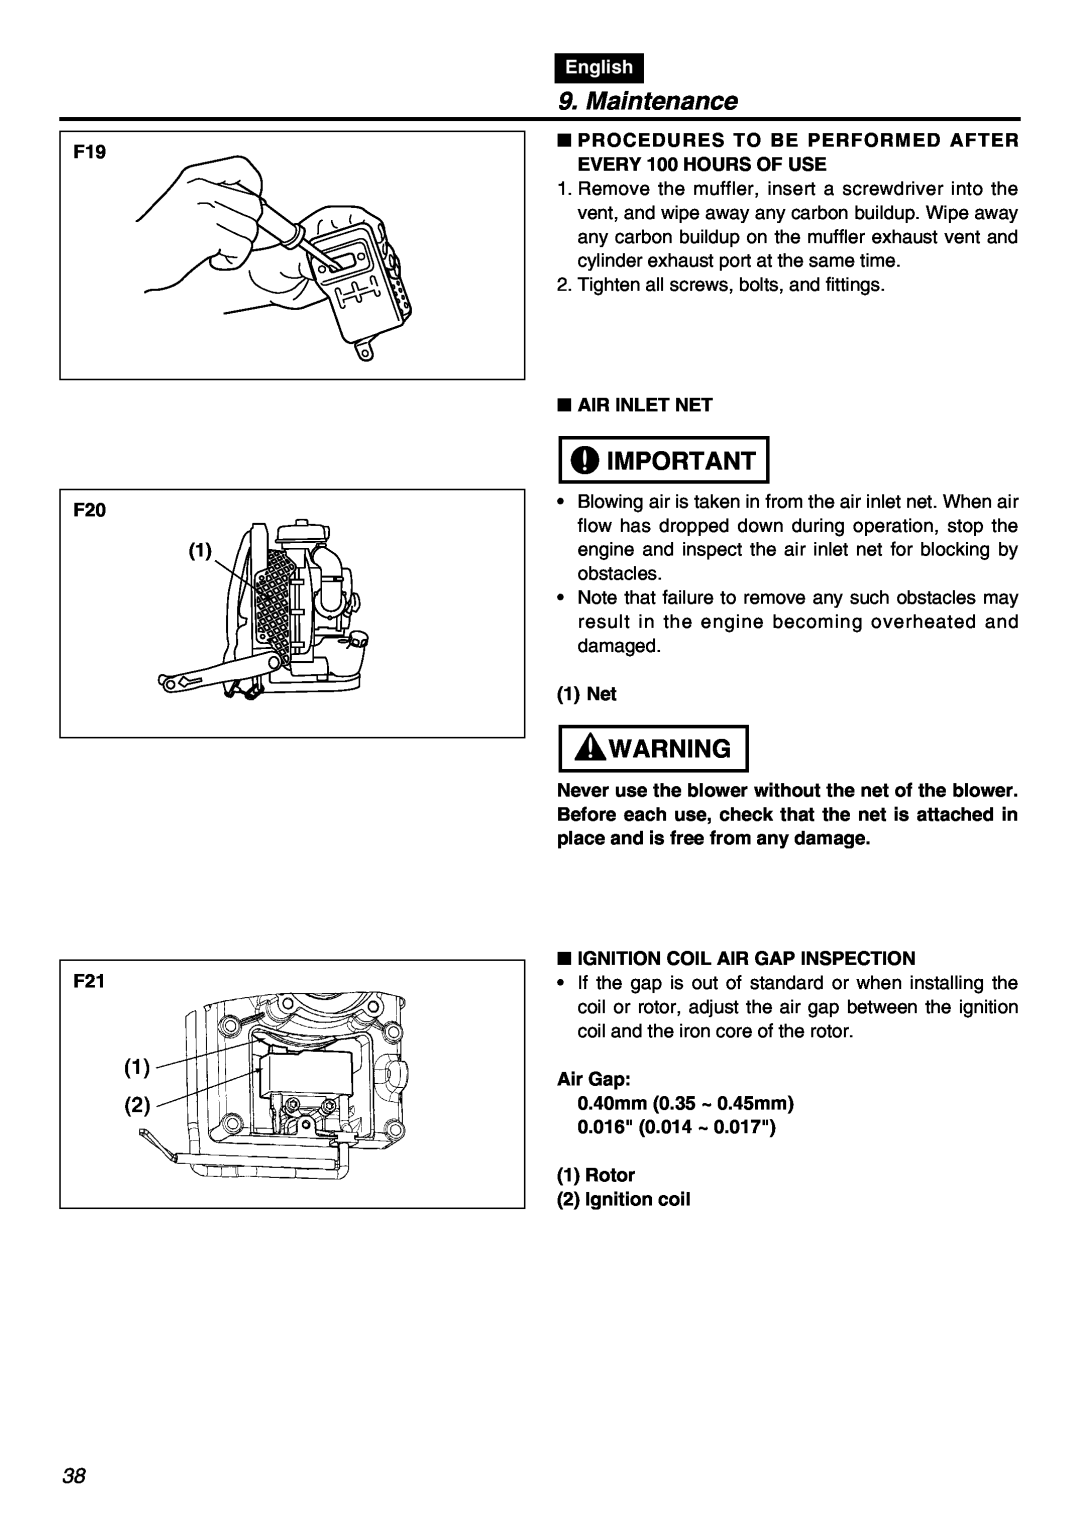 RedMax EBZ8001RH manual Maintenance, F19 F20, English 